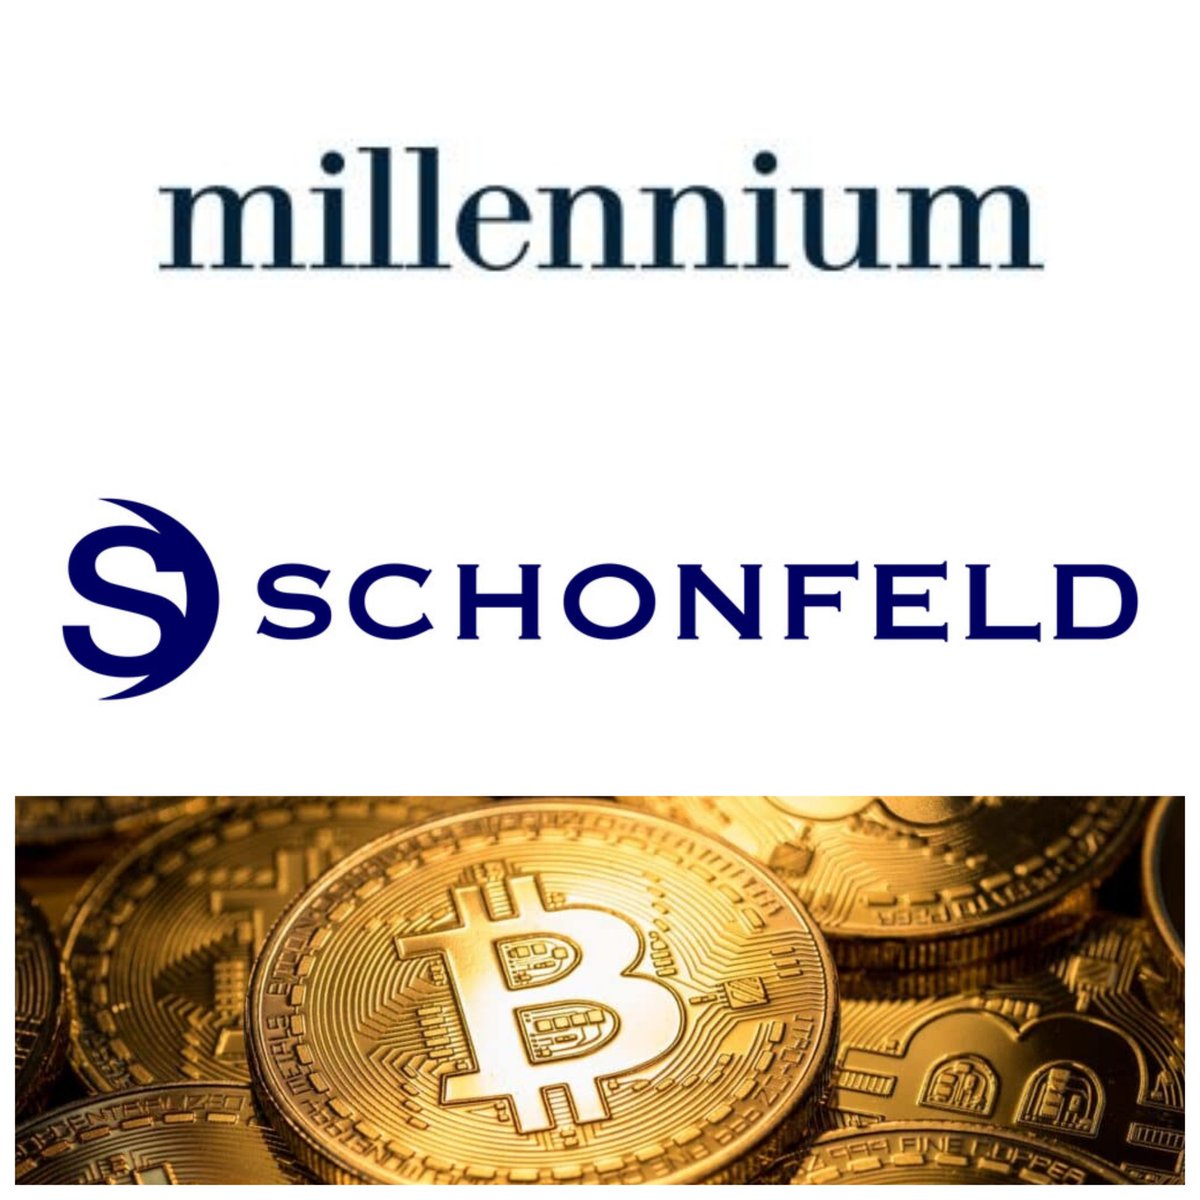 🚨 Millennium Management et Schonfeld Strategic Advisors ont révélé une exposition de 2,4 milliards de dollars dans des ETF #Bitcoin spot.

Millennium a investi un total de 1,9 milliard de dollars dans des ETF Bitcoin spot, dont notamment 844,2 millions de dollars dans l'IBIT de